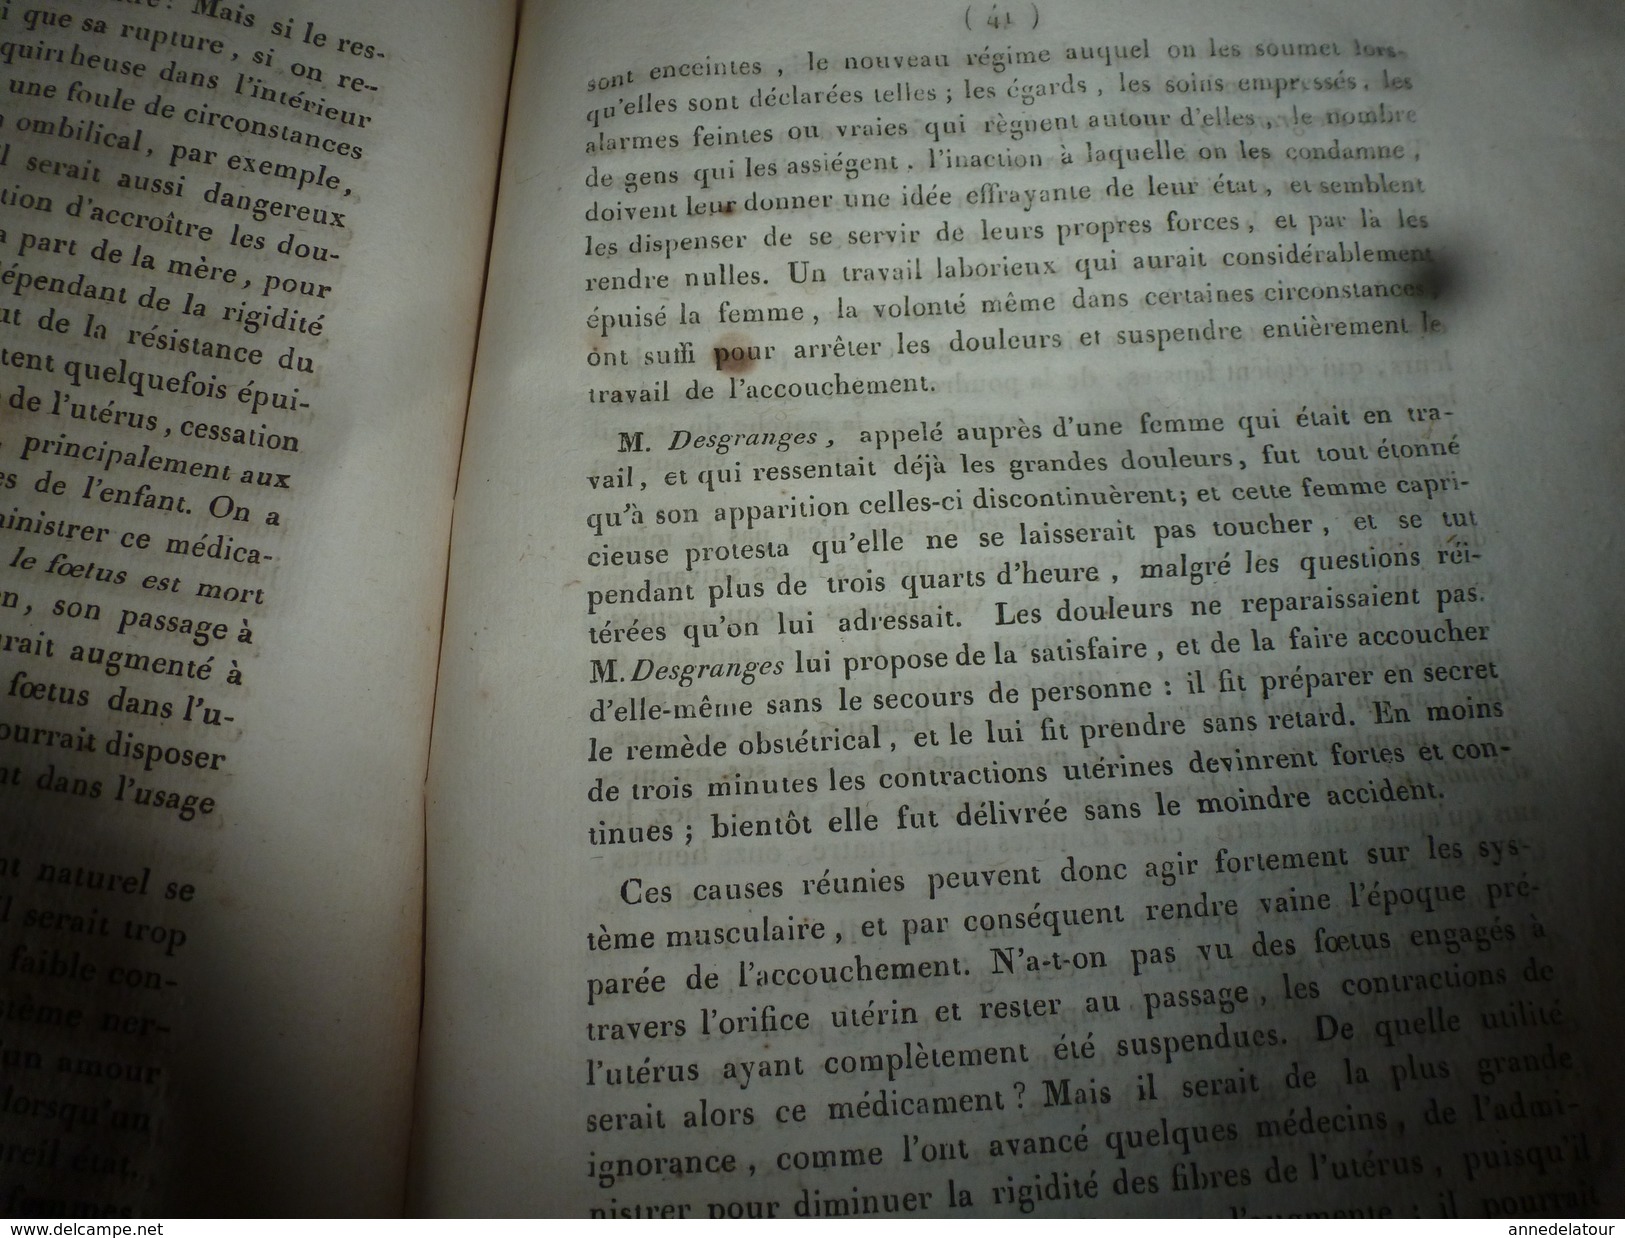 1818 Rare thèse du docteur  Bordot sur LE SEIGLE ergoté (poudre sacrificielle des sorcières), .(dédicace manuscrite)